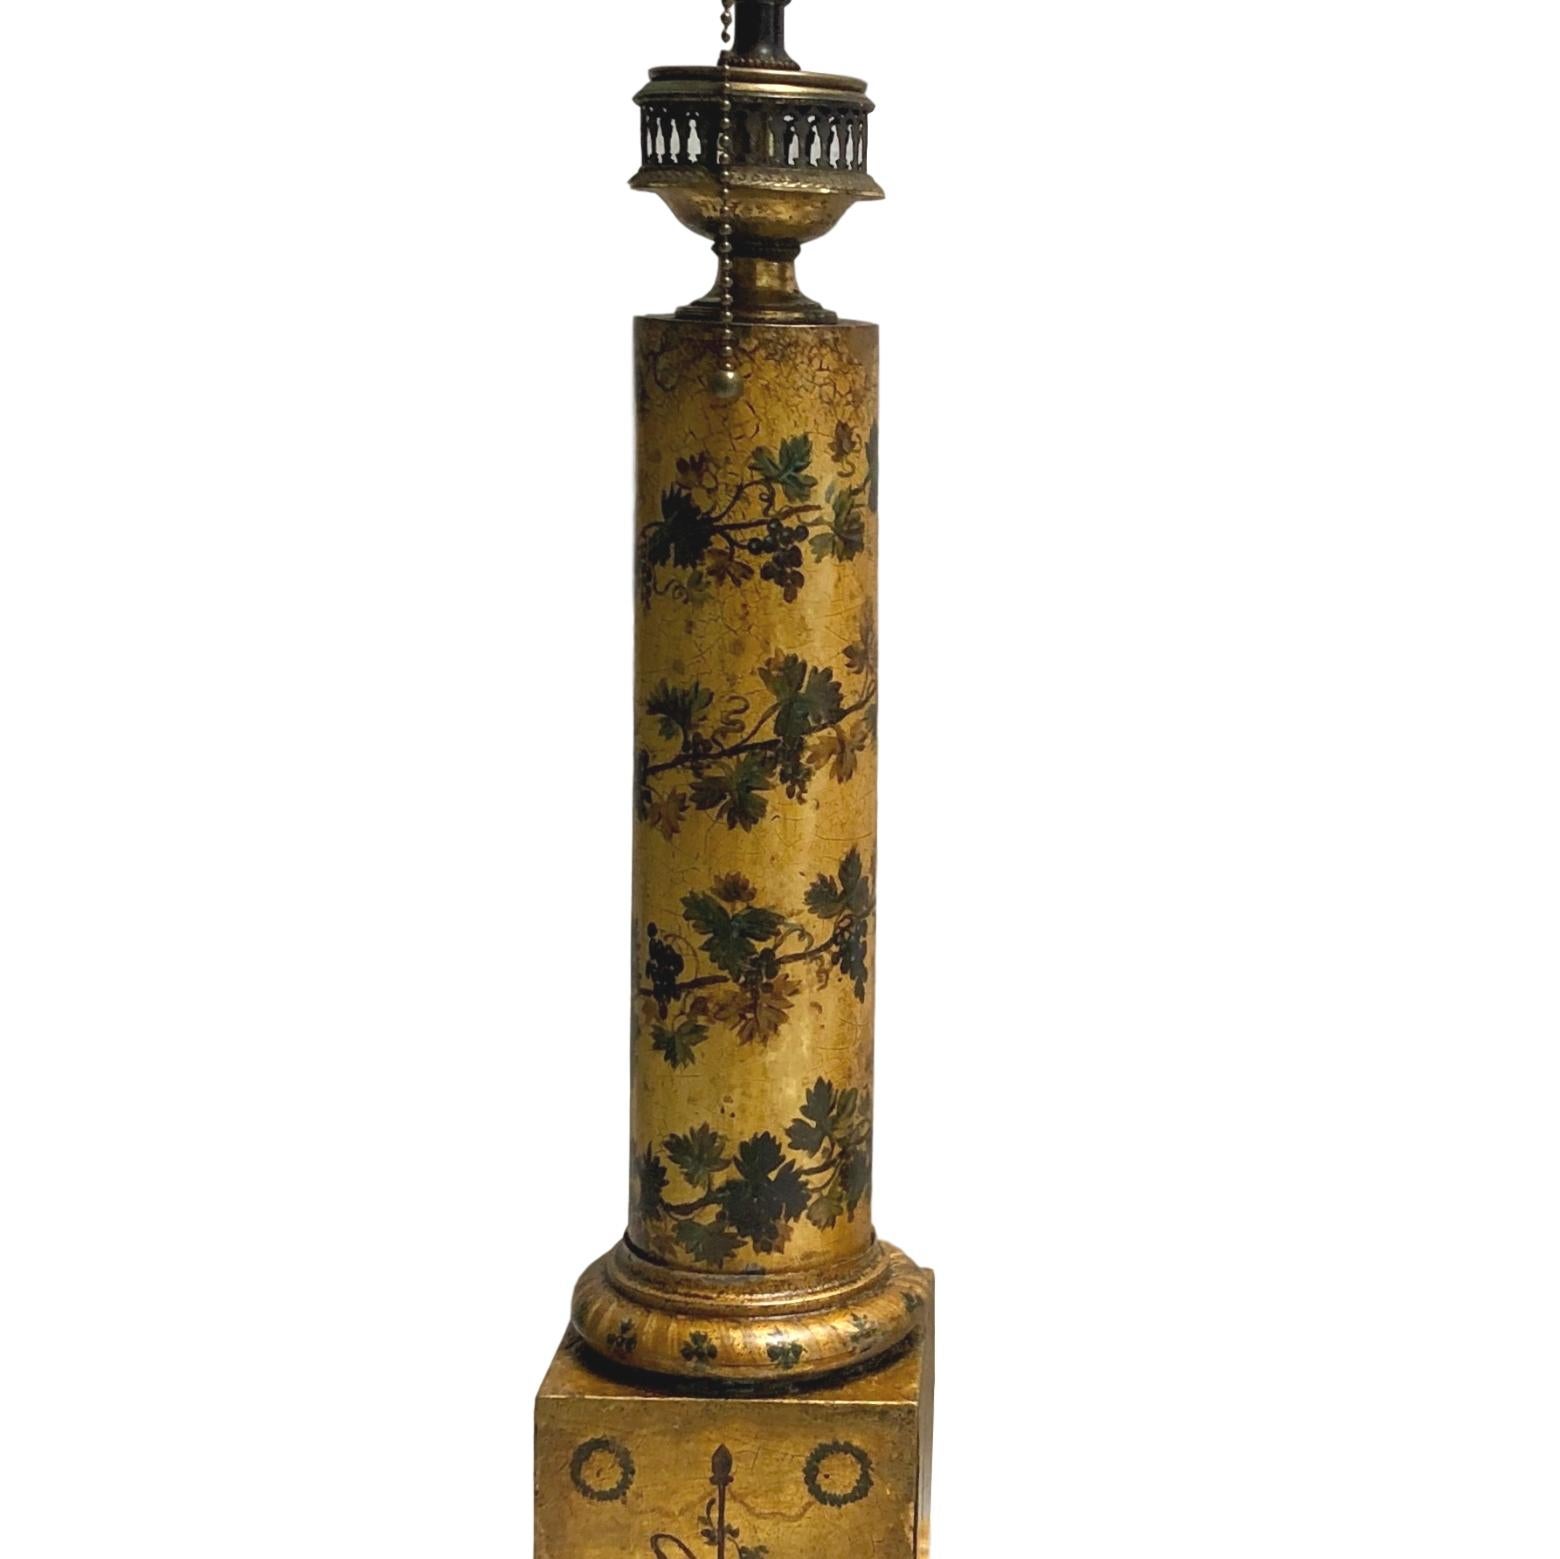 Paire de lampes à tole françaises des années 1920, dorées et peintes, à motif de feuillage sur un corps de colonne néoclassique.

Mesures :
Hauteur du corps : 19,5